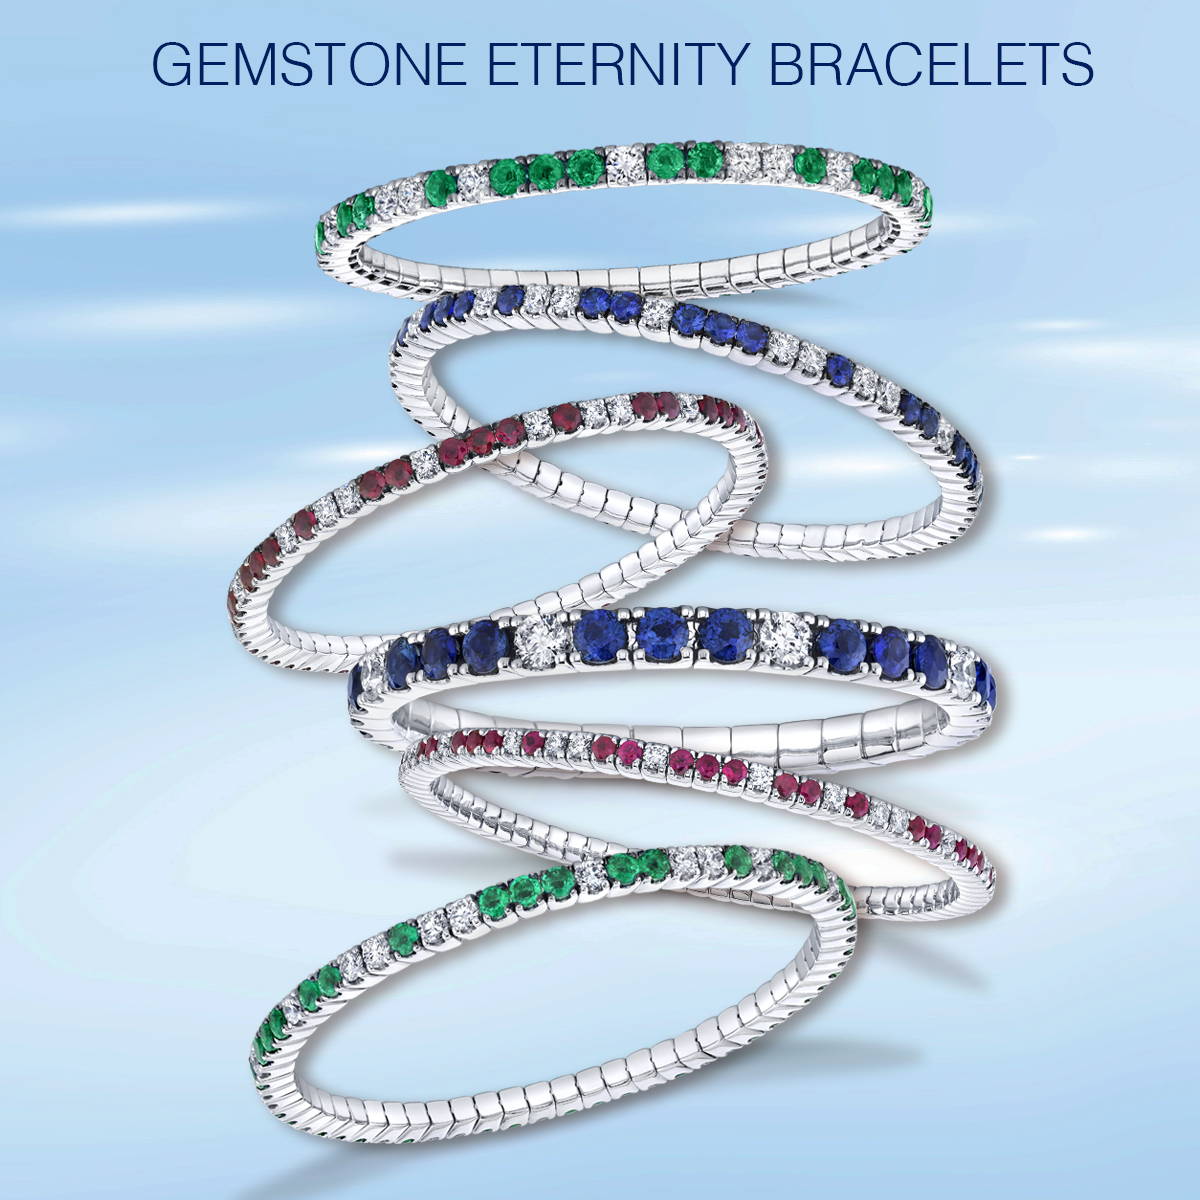 Flexible gemstone and diamond bangle bracelets